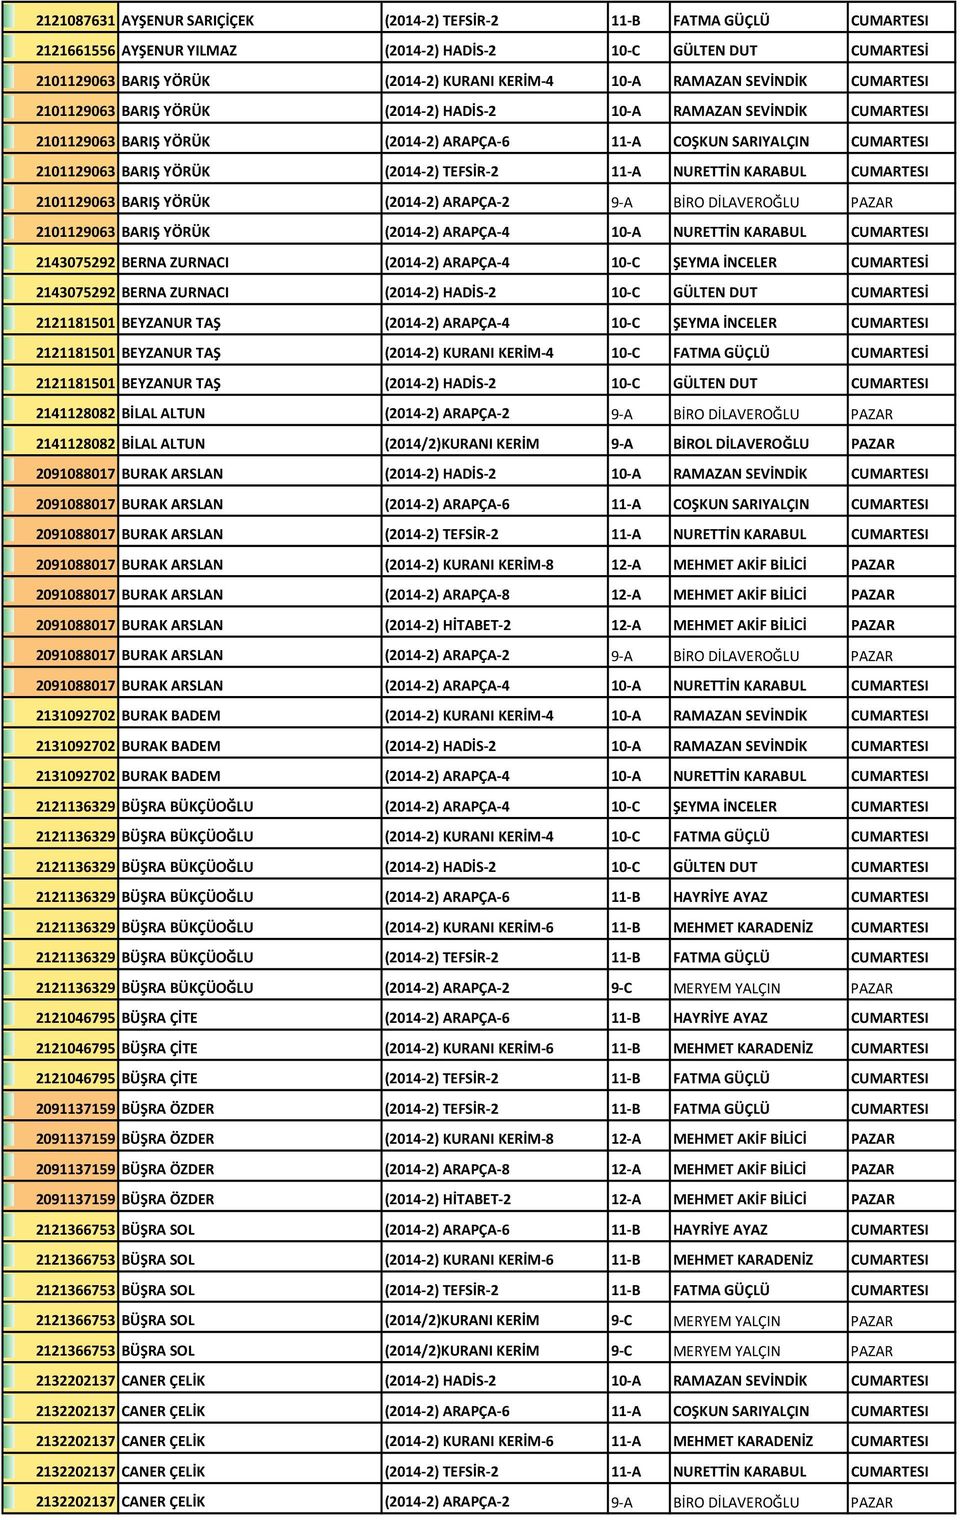 (2014-2) TEFSİR-2 11-A NURETTİN KARABUL CUMARTESI 2101129063 BARIŞ YÖRÜK (2014-2) ARAPÇA-2 9-A BİRO DİLAVEROĞLU PAZAR 2101129063 BARIŞ YÖRÜK (2014-2) ARAPÇA-4 10-A NURETTİN KARABUL CUMARTESI